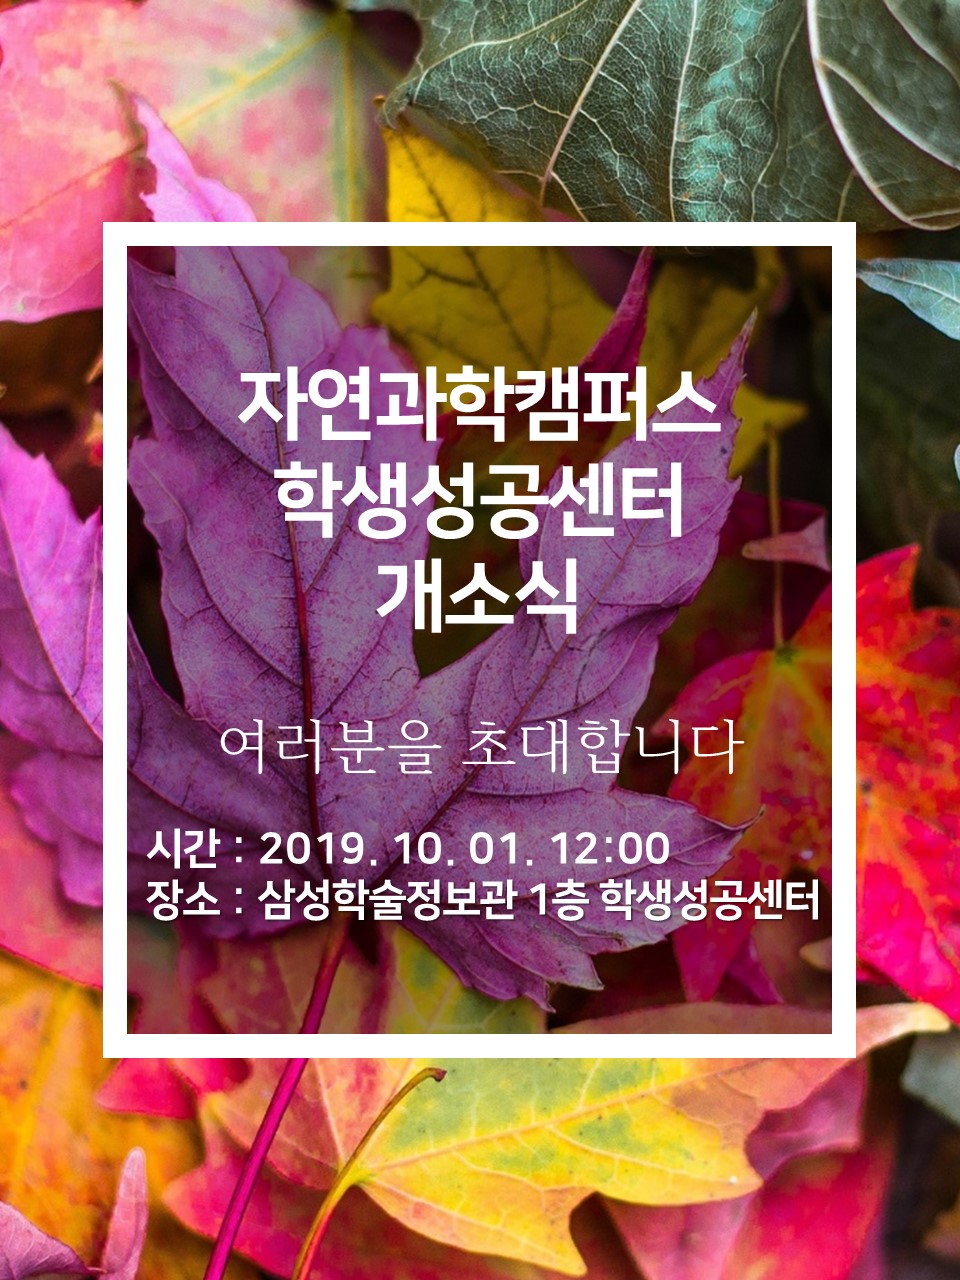 자과캠 SSC 개소식 초청장 홍보